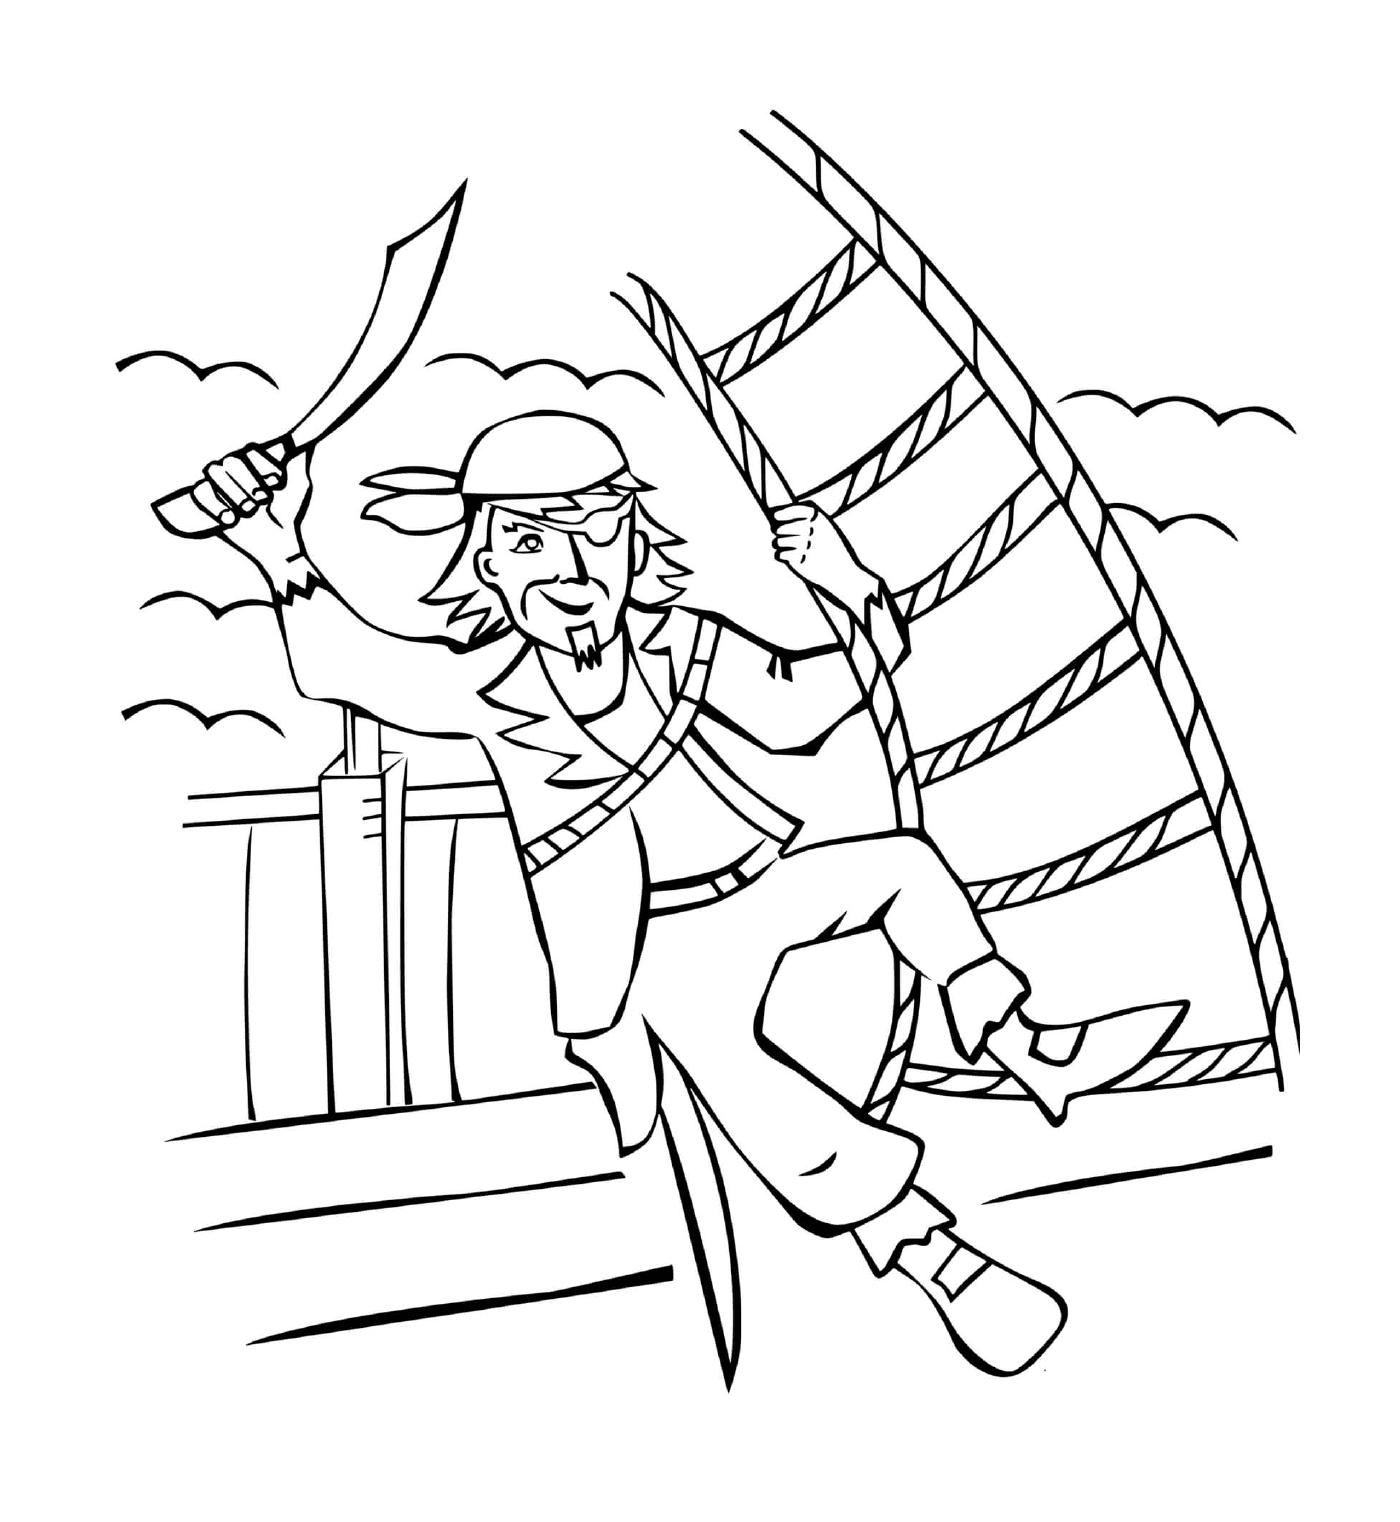   Pirate garçon, bateau aventure 